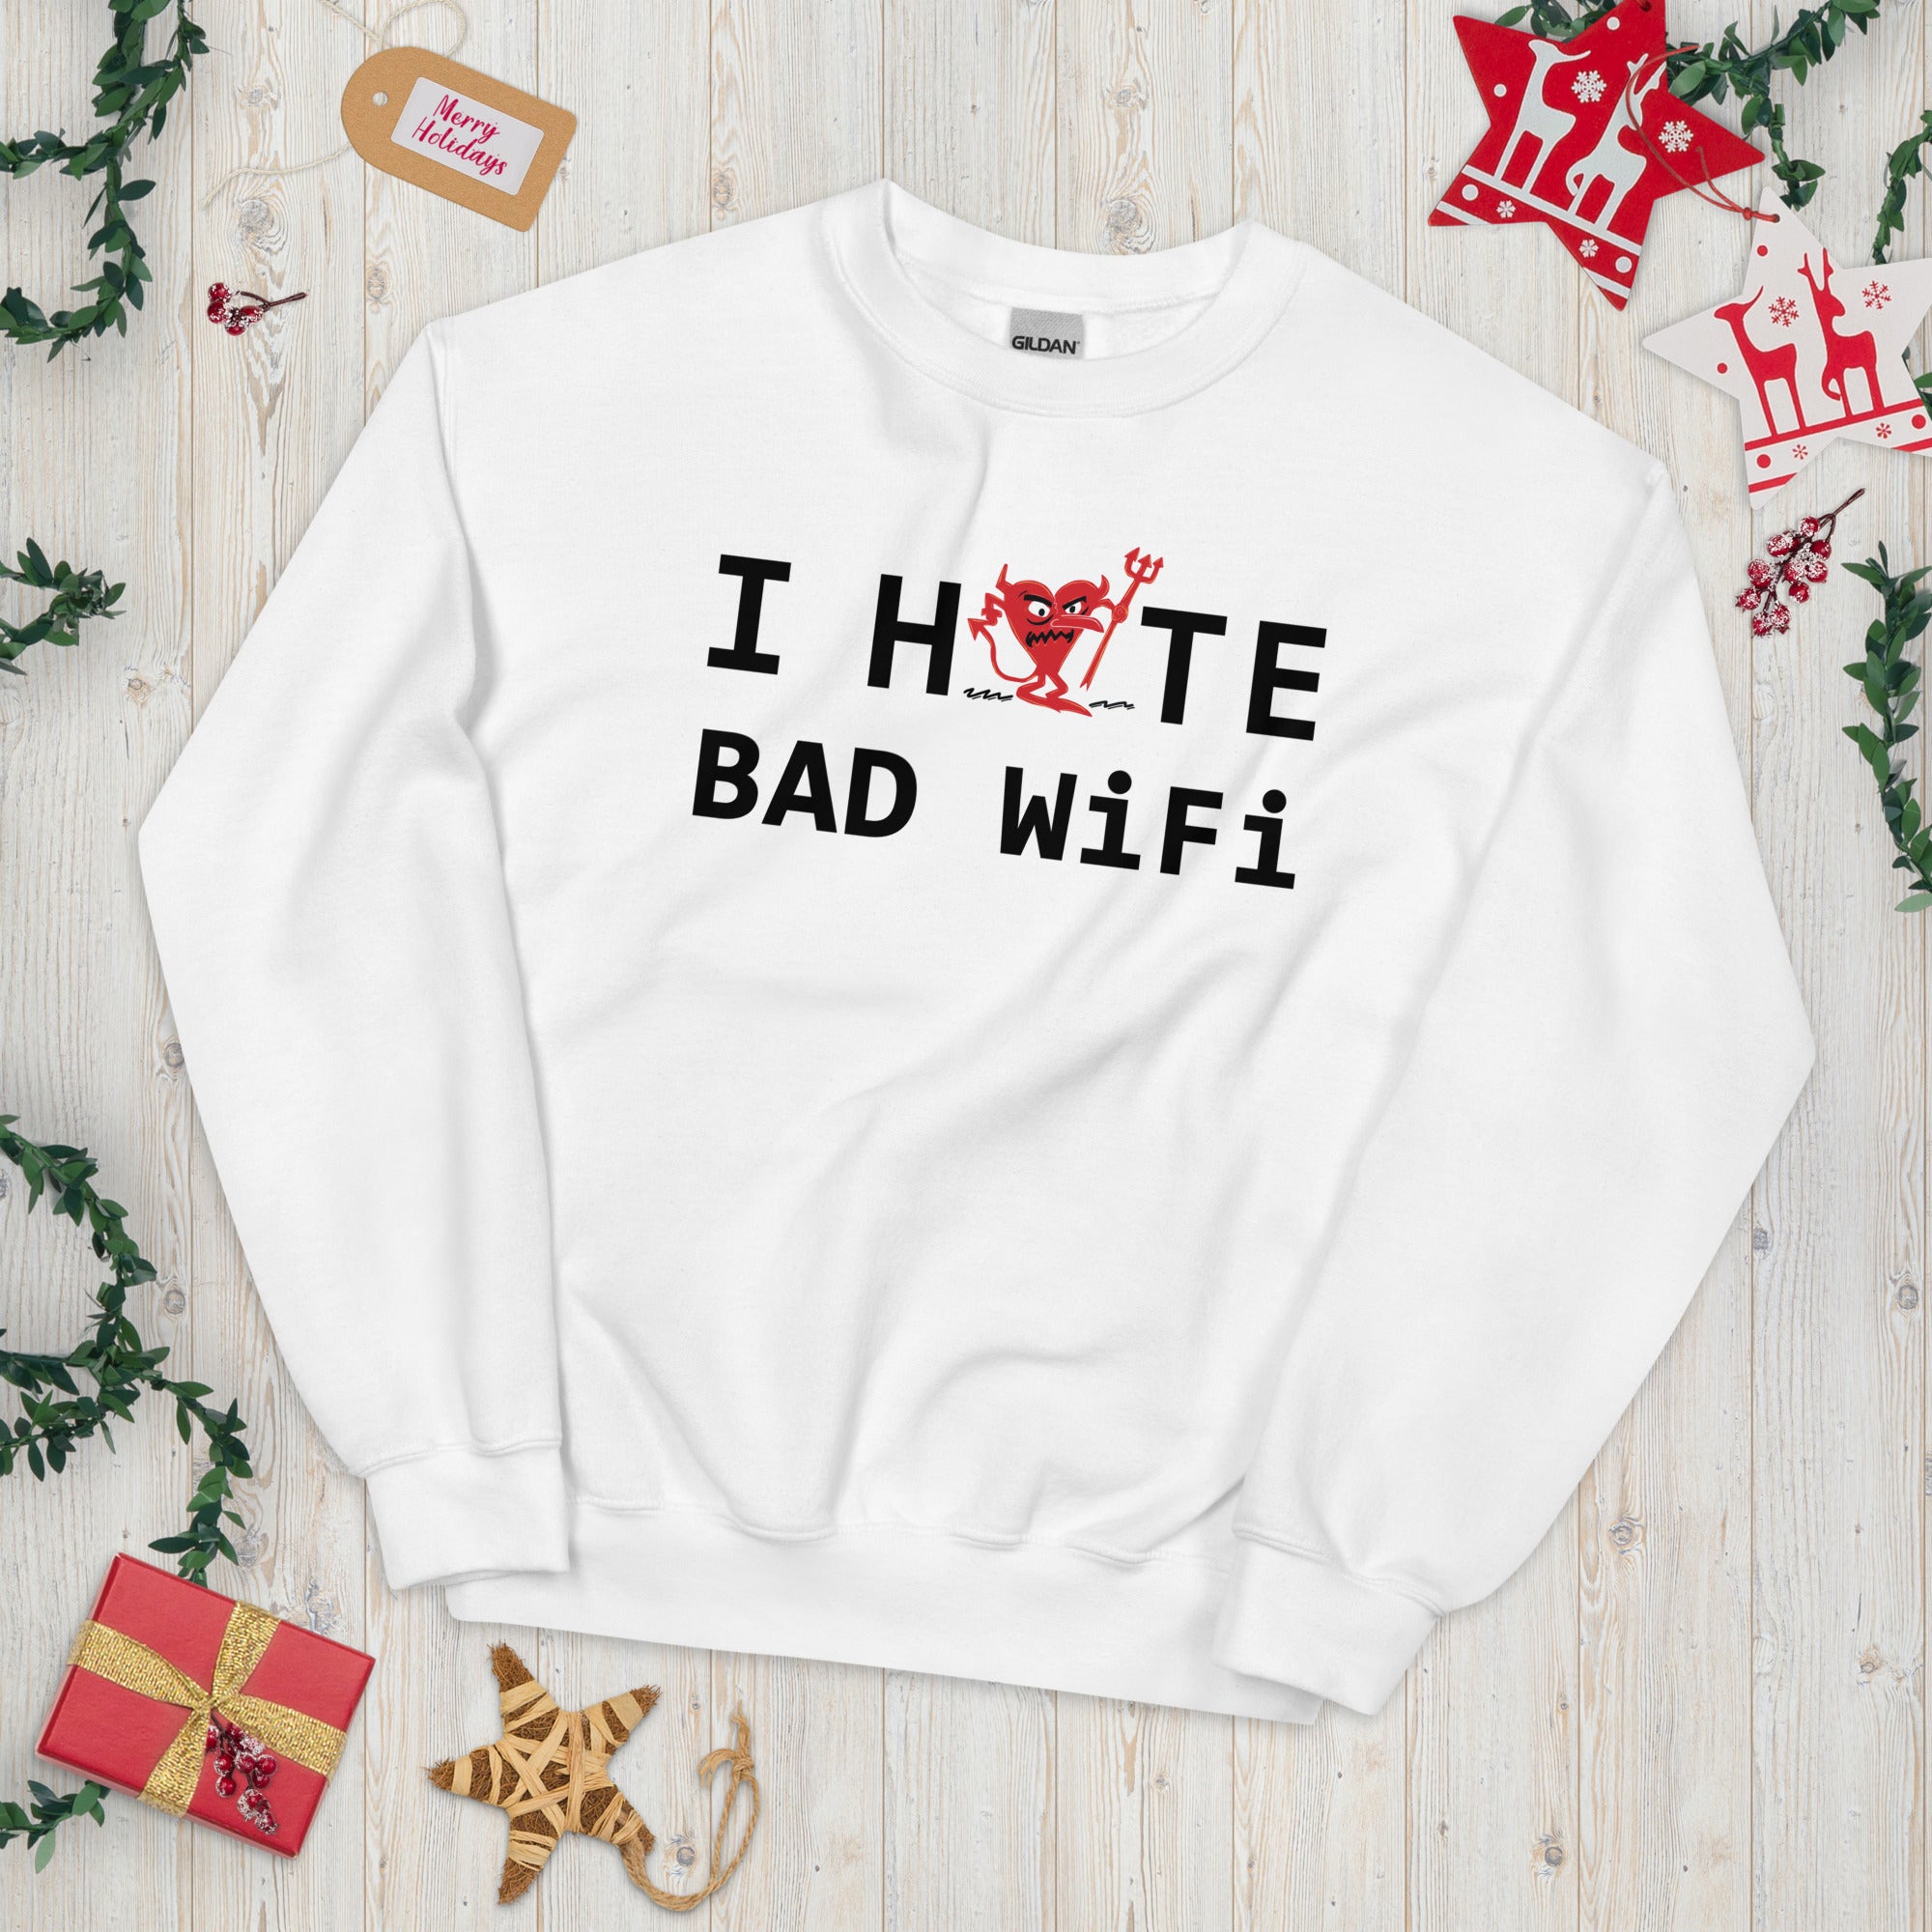 I Hate Bad WIFI Unisex Sweatshirt